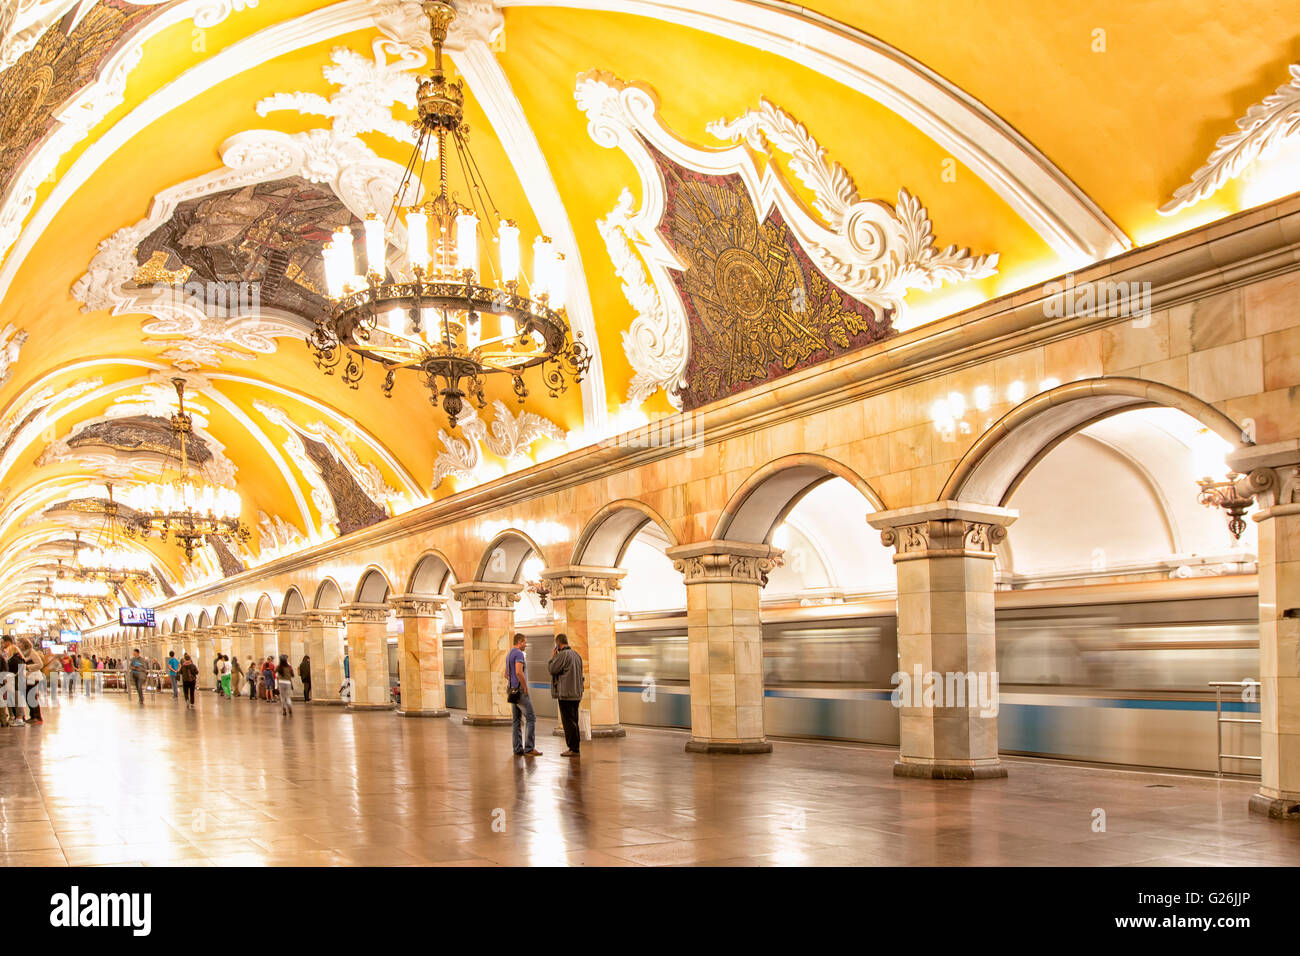 Komsomolskaya subway station in Moscow Stock Photo